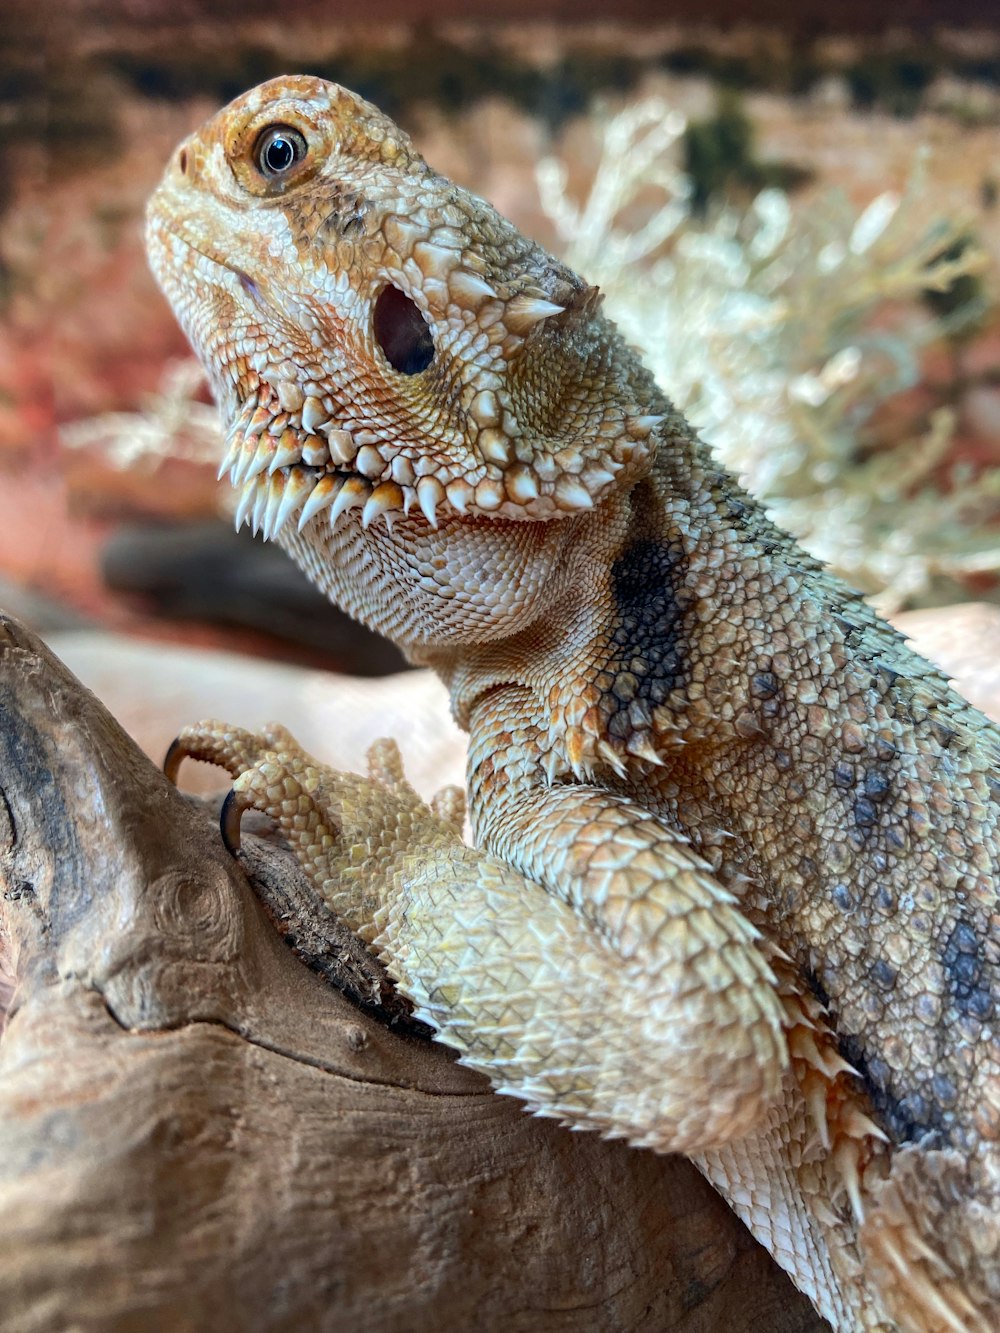 a close up of a lizard on a log